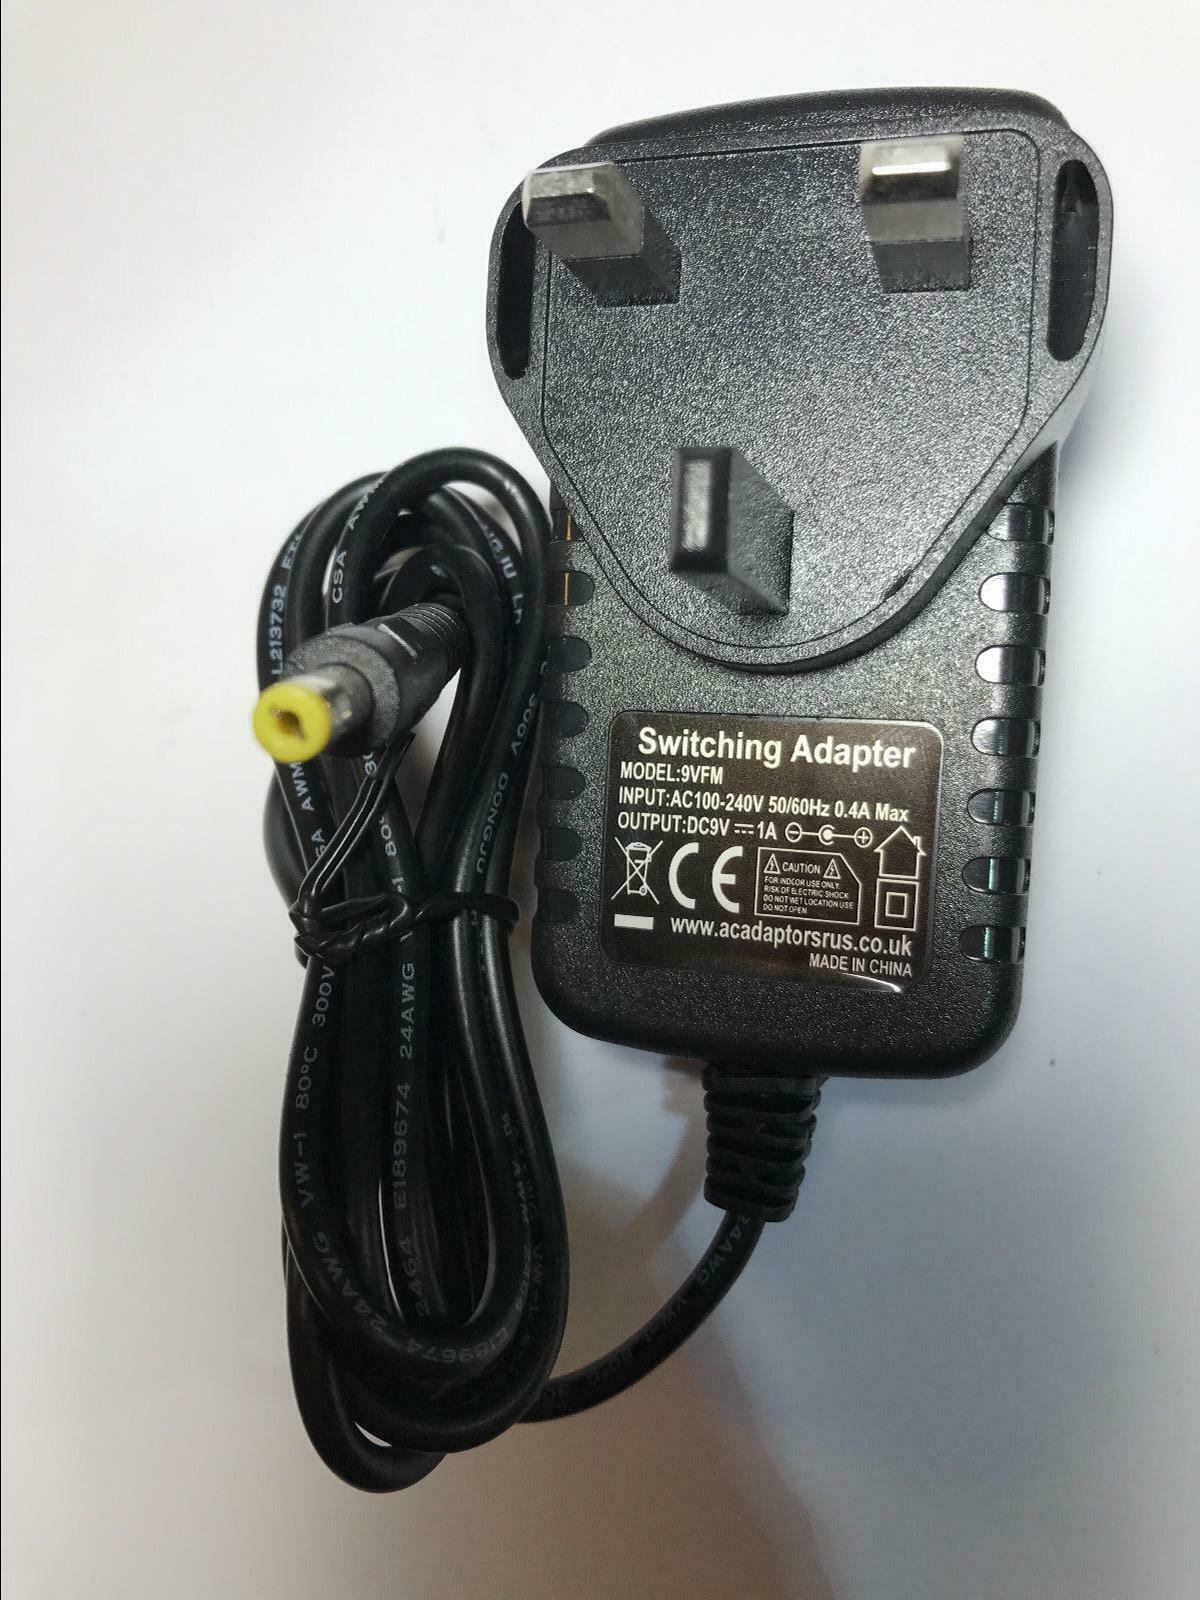 Panasonic DVDLA95 DVD-LA95 9V AC Adaptor Mains Charger Output Current: 1A MPN: N4-9VFM-72! Manufacturer warranty: 1